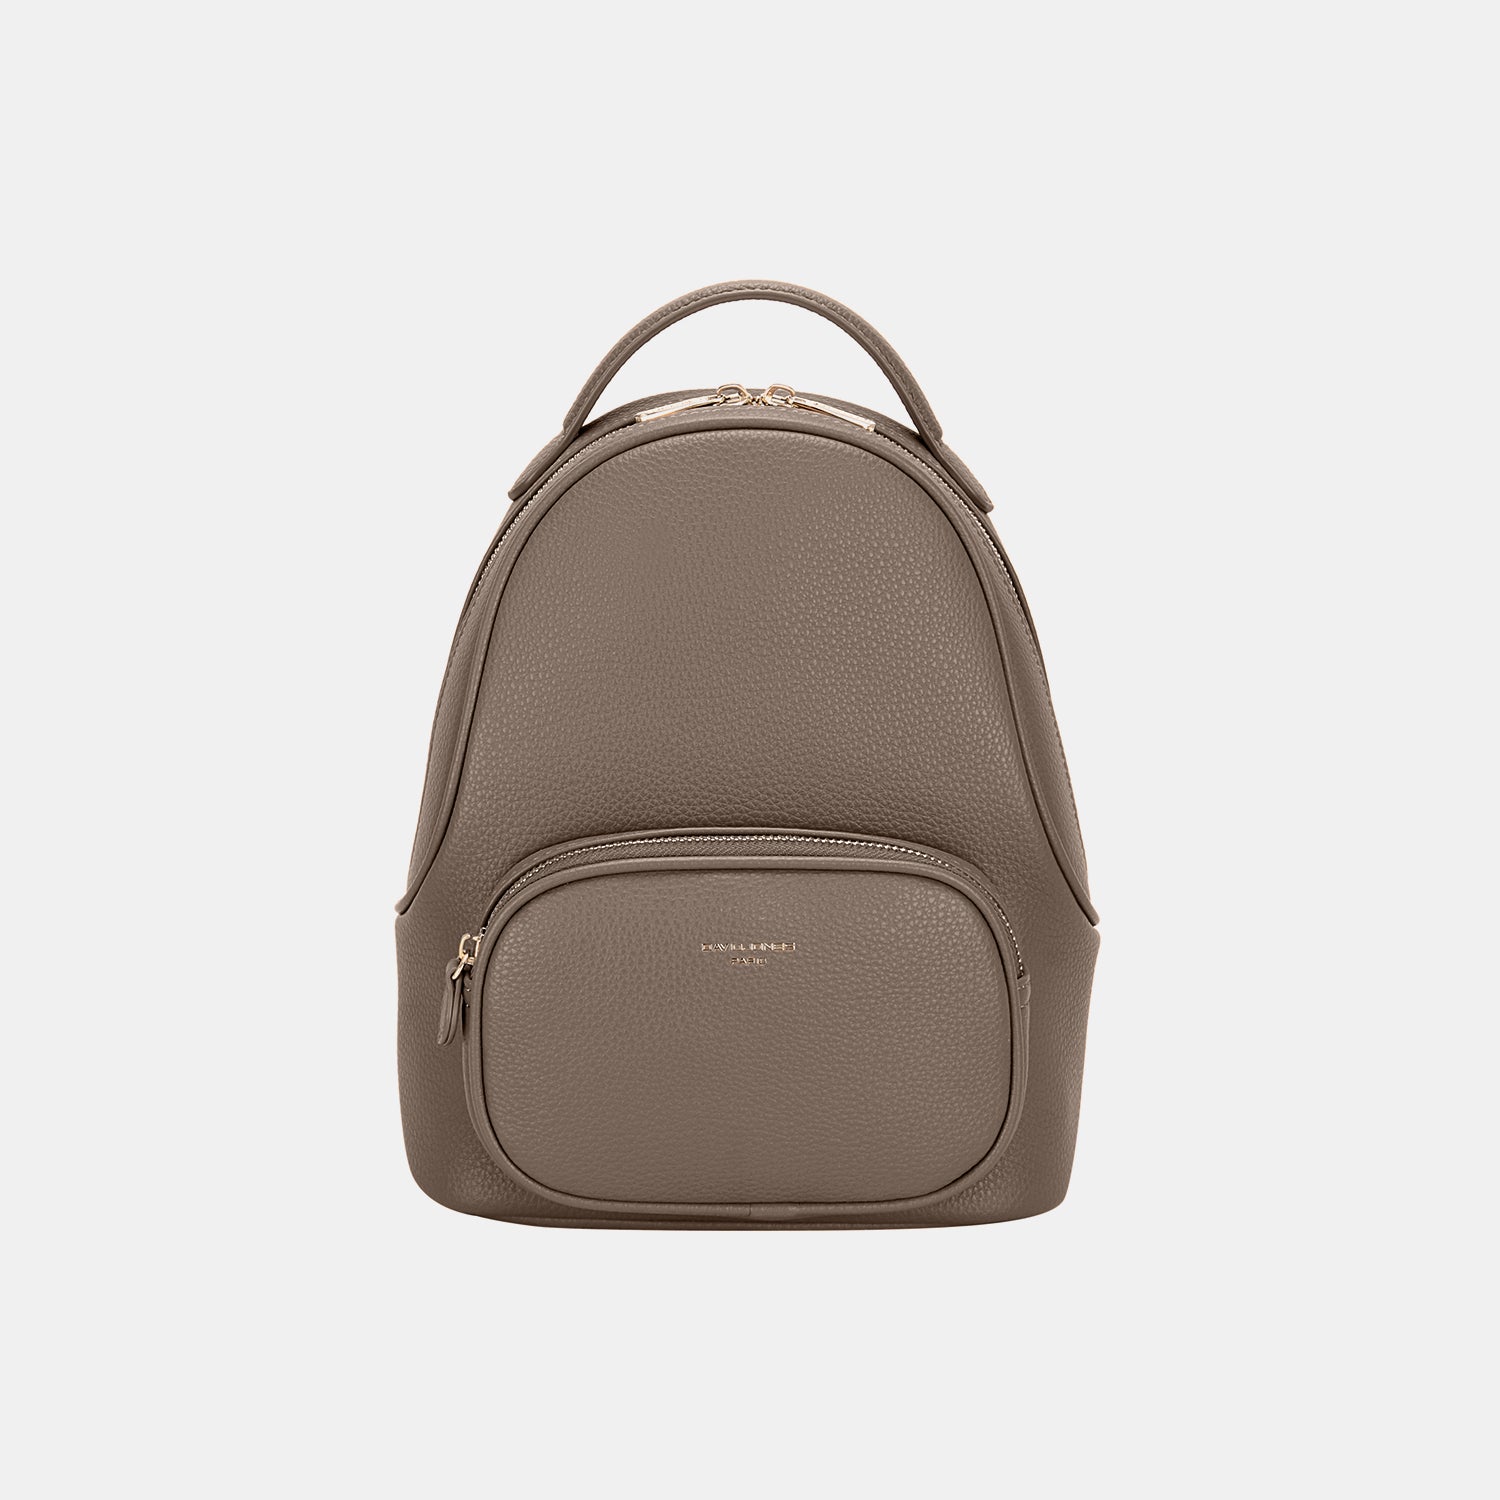 TEEK - Arched Handle Backpack BAG TEEK Trend Taupe  